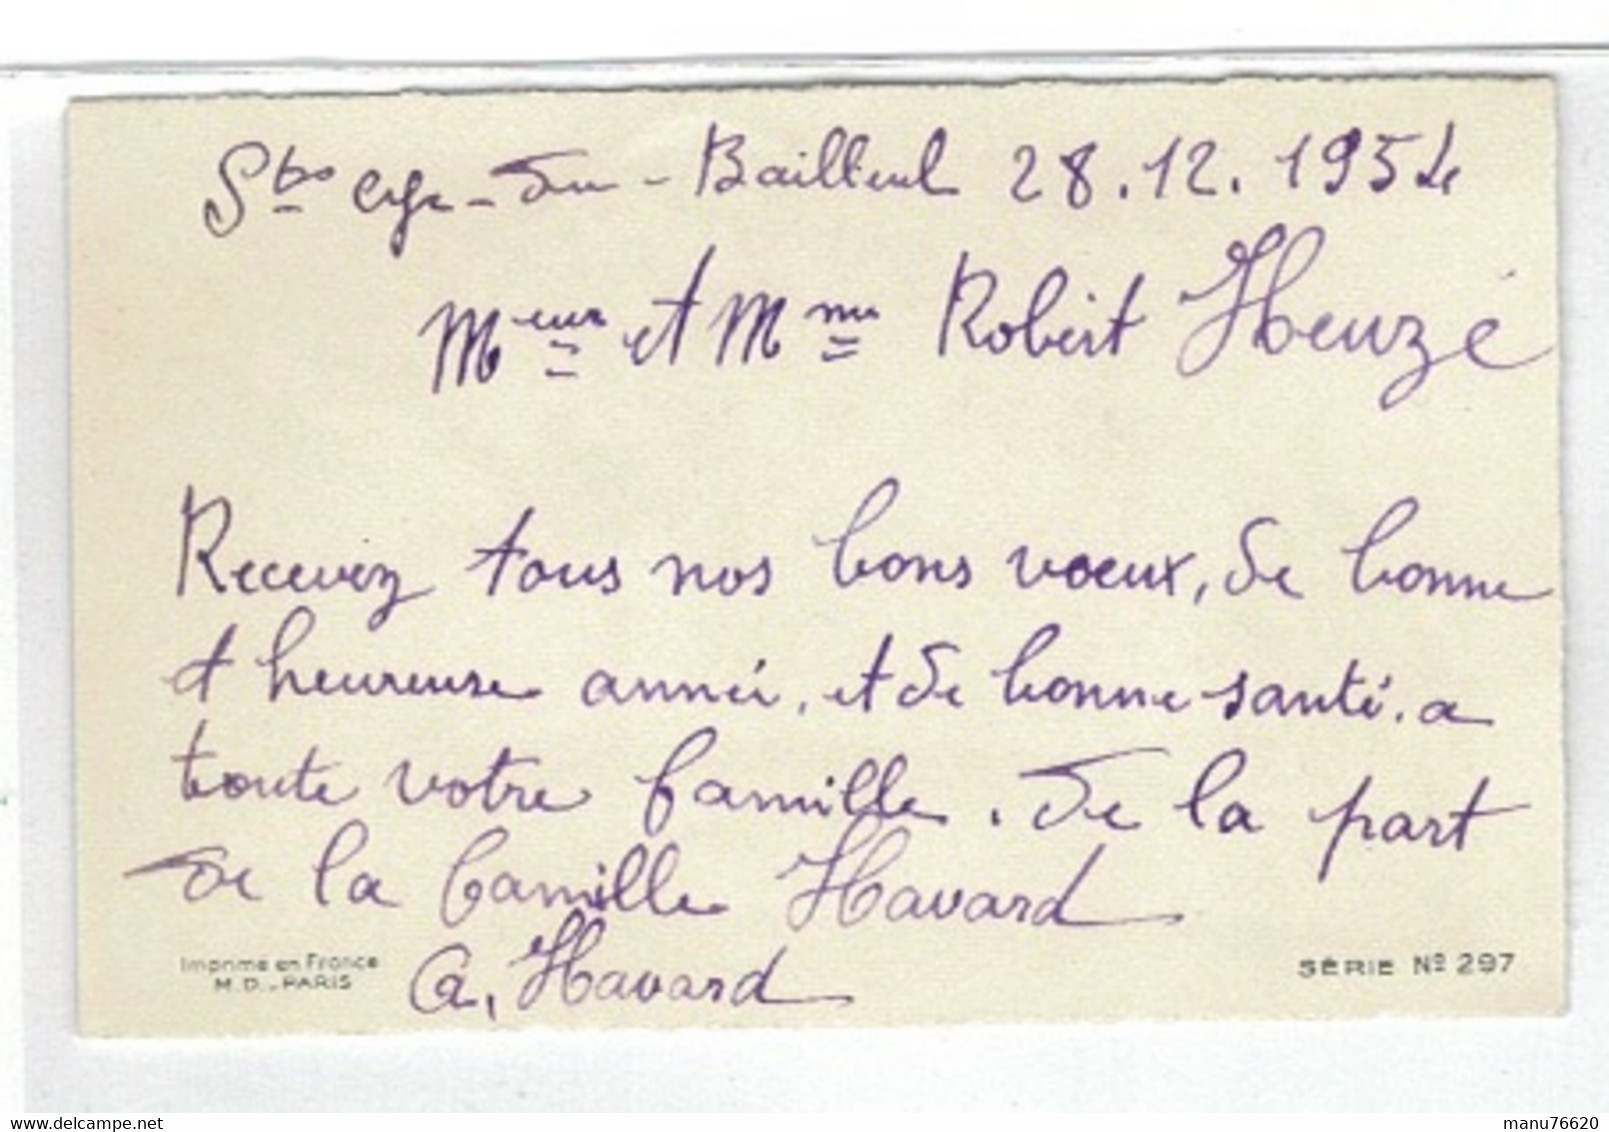 CARTE VOEUX ET BONNE ANNEE- Chasseur Et Fusil , Saint Cyr Du Bailleul , Manche-  28,12,1954 - - Neujahr